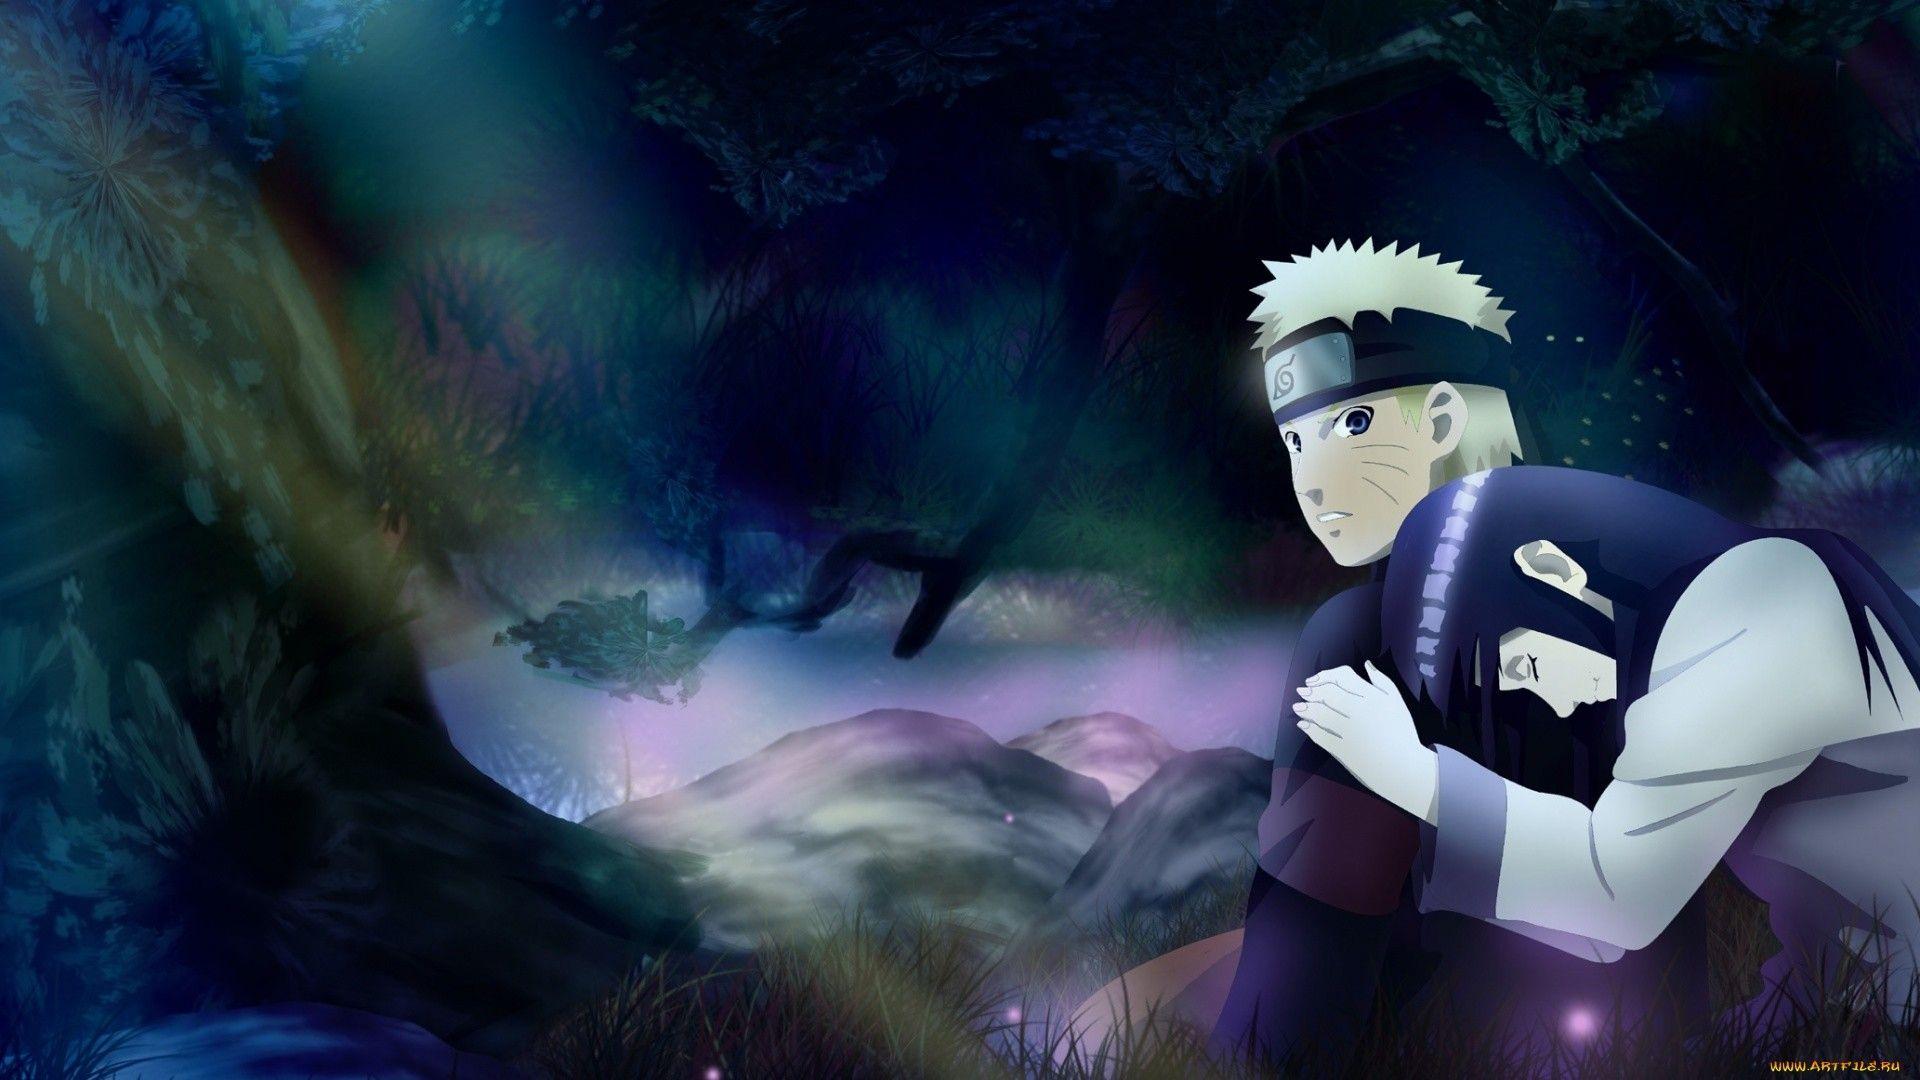 Naruto And Hinata Kiss Wallpapers - Wallpaper Cave